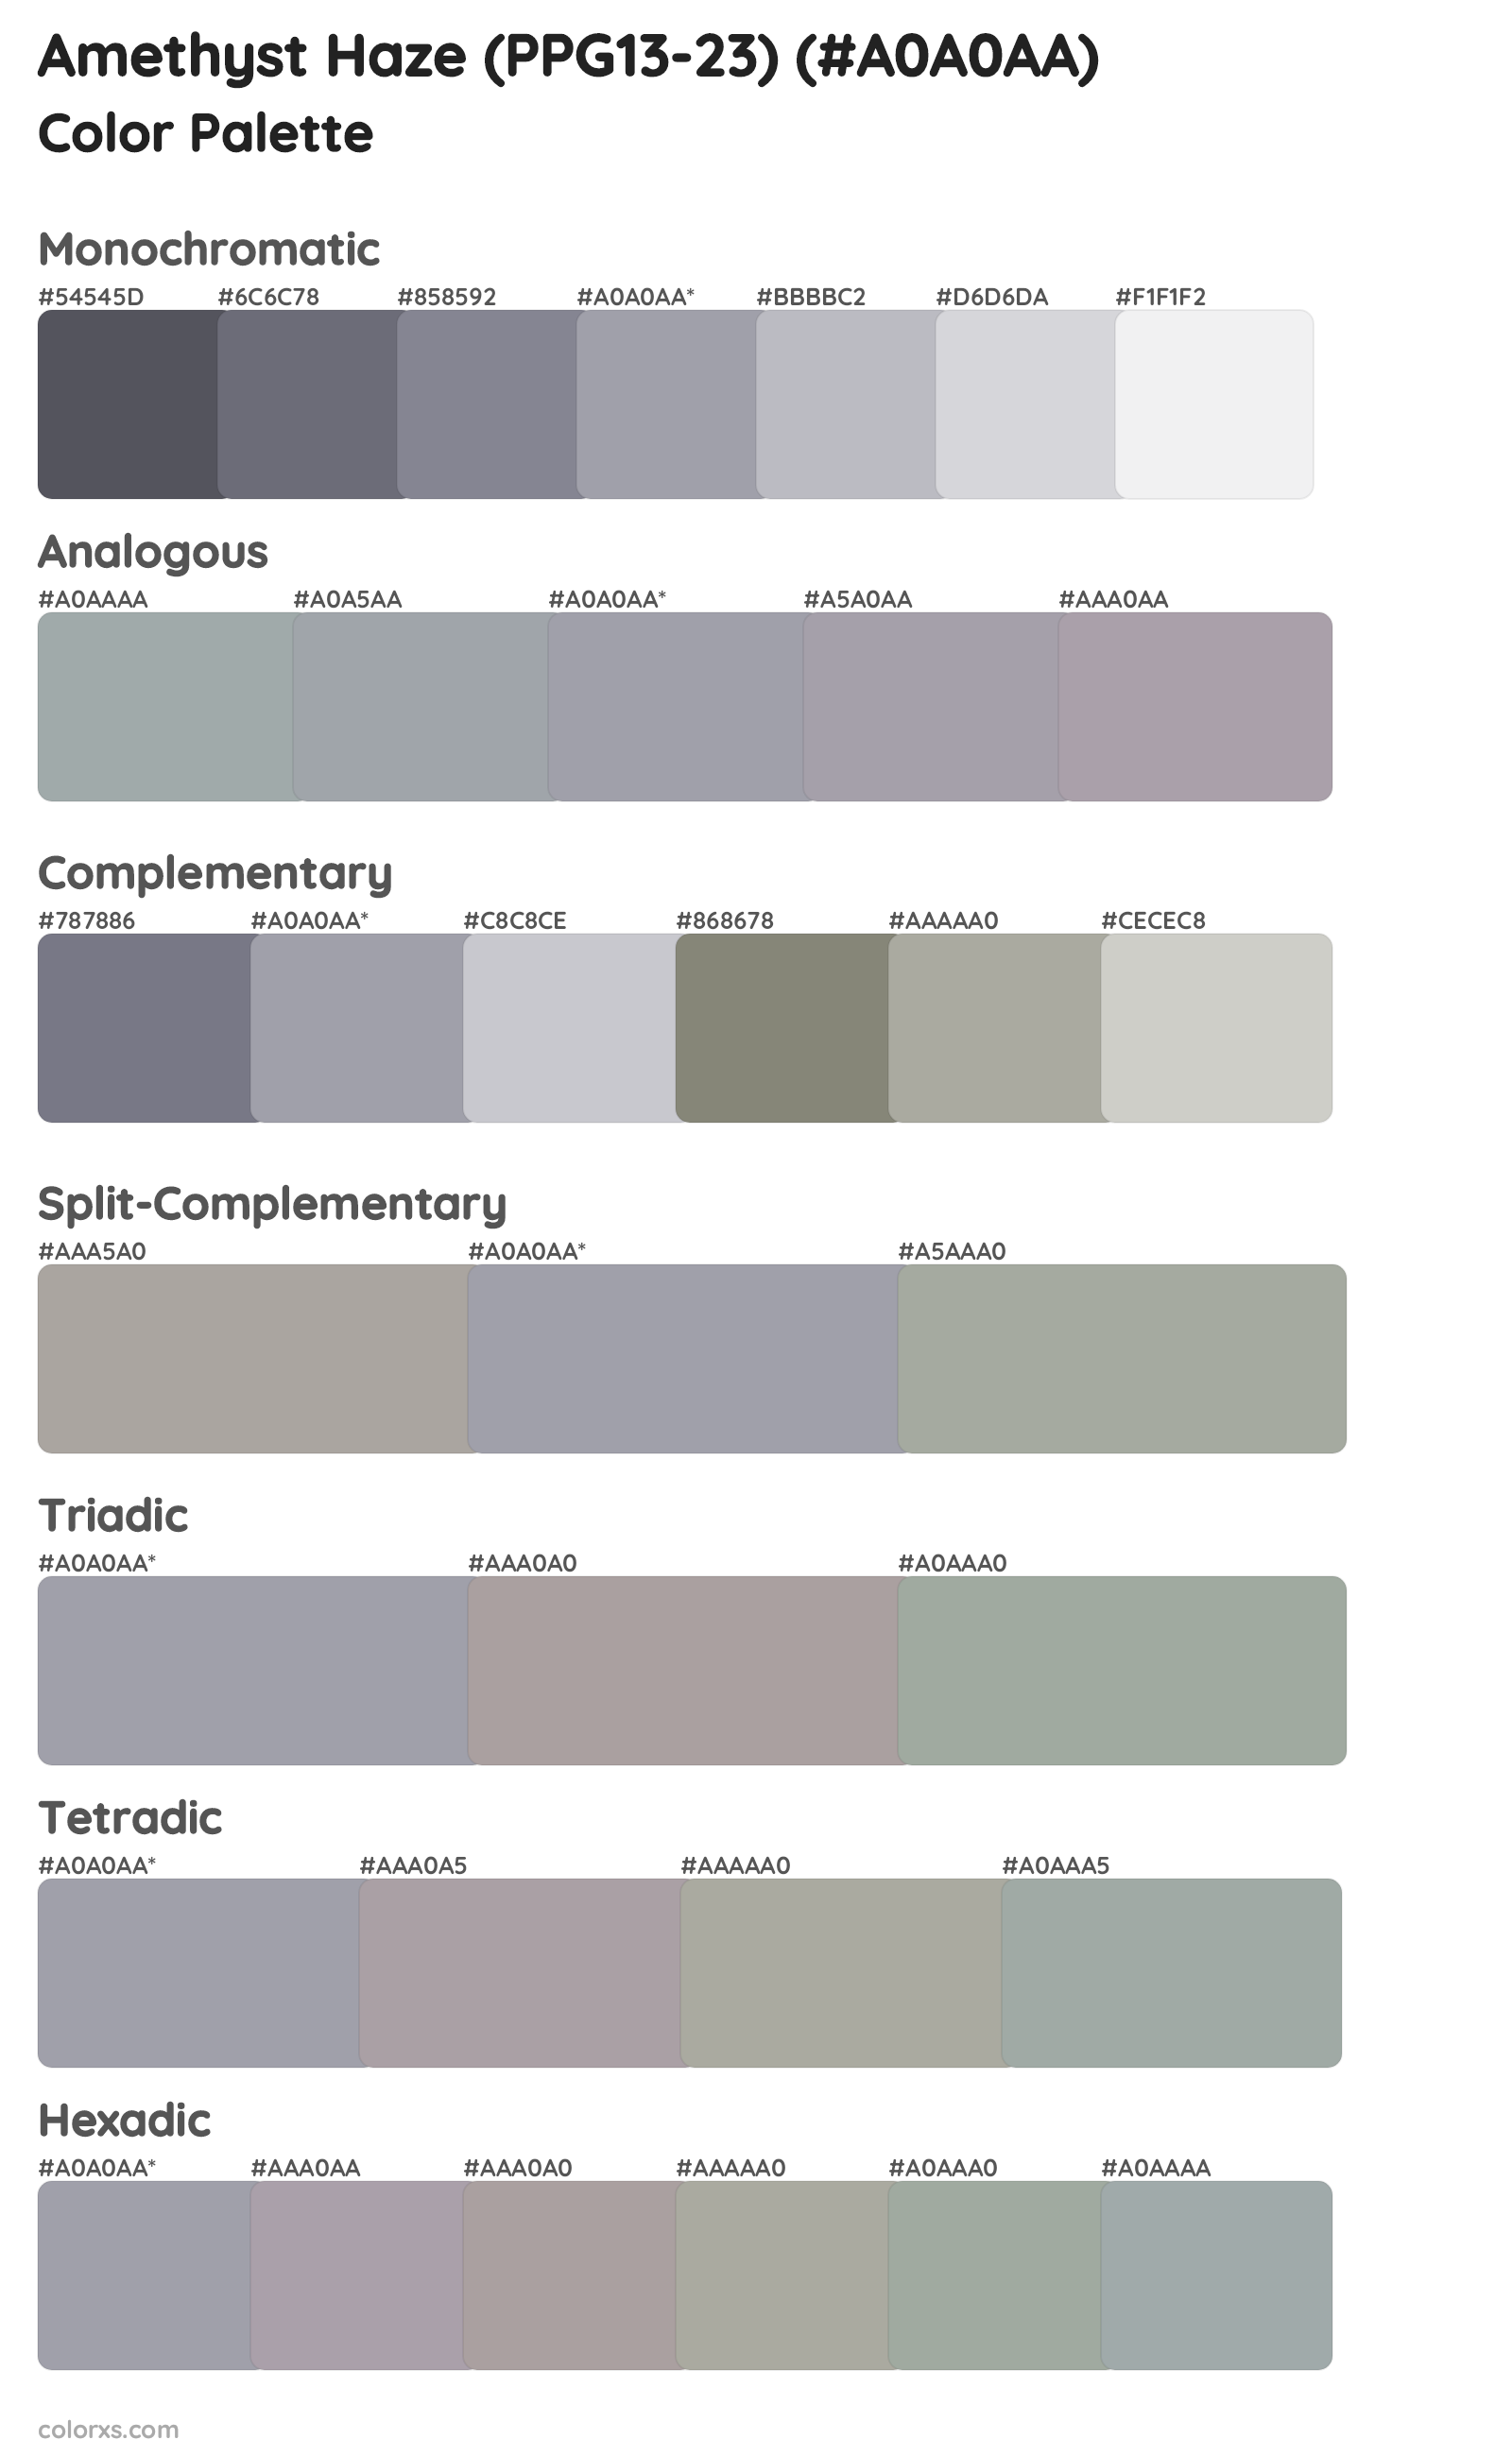 Amethyst Haze (PPG13-23) Color Scheme Palettes